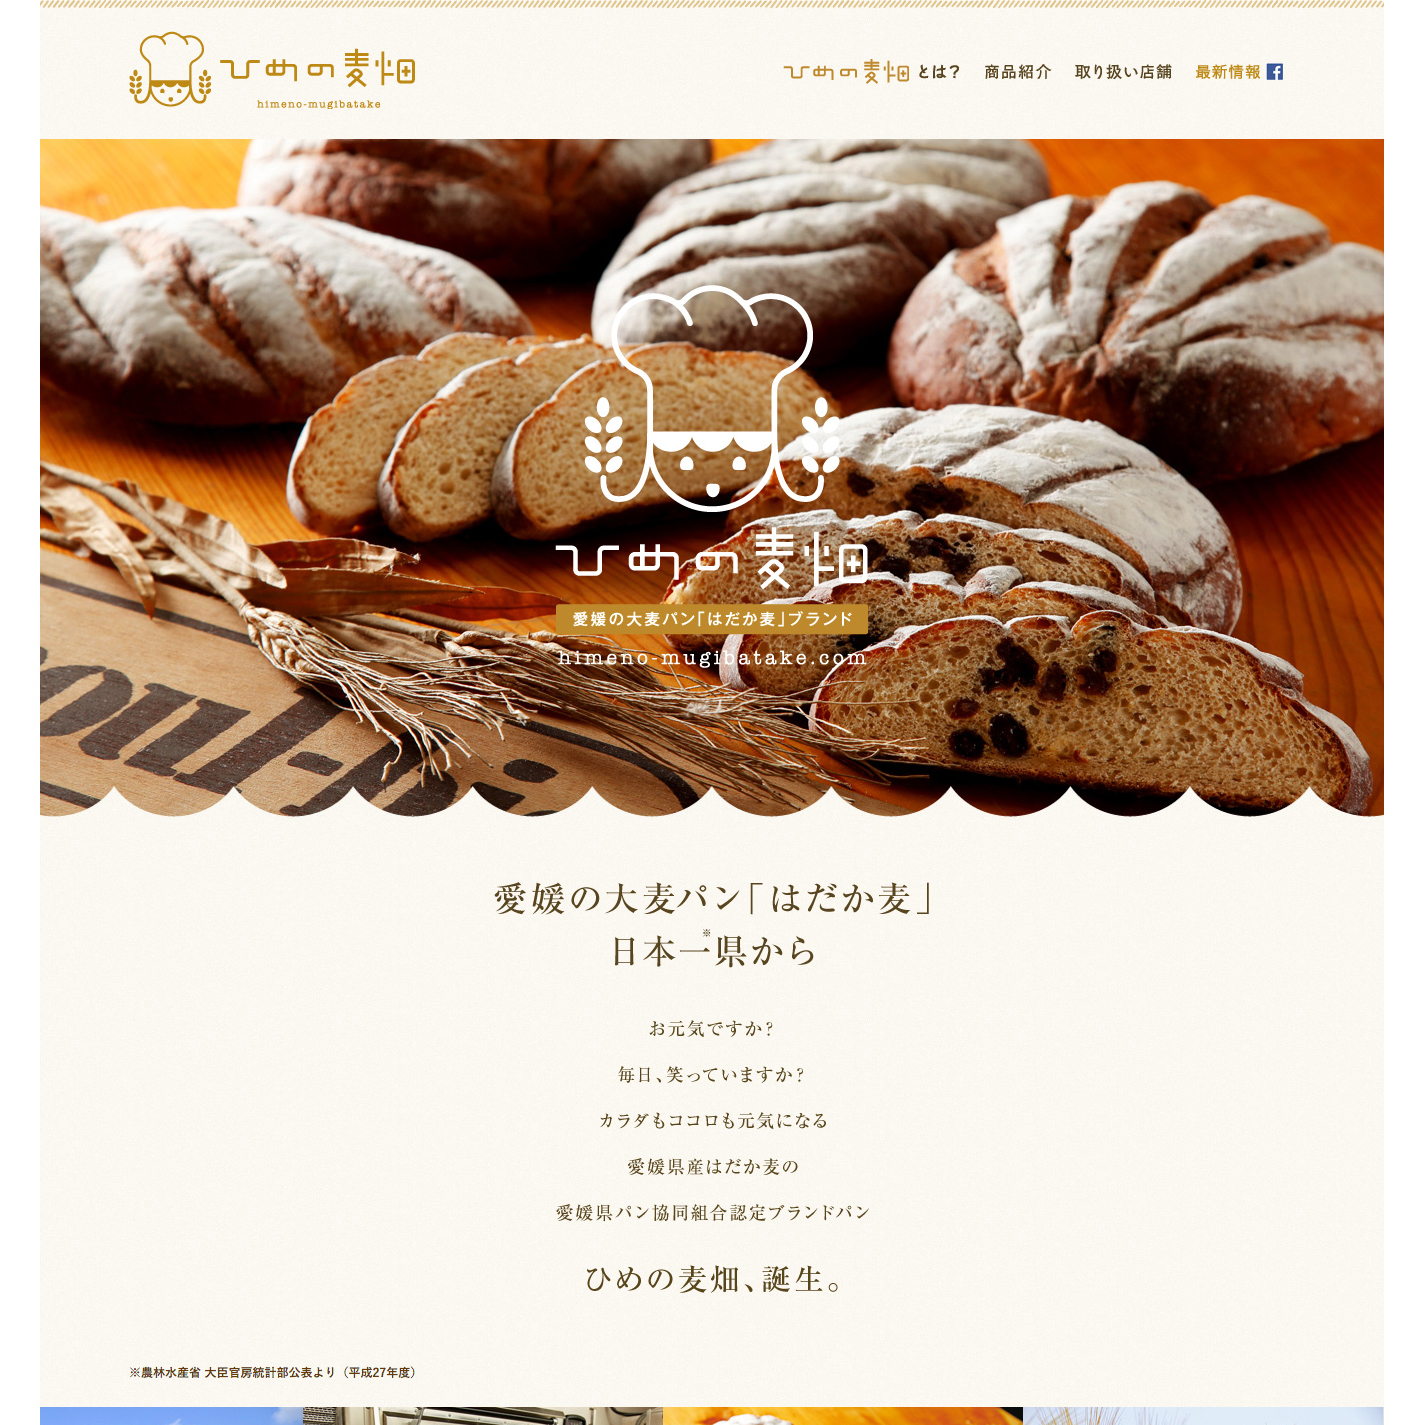 愛媛の大麦パン 縦長のwebデザインギャラリー サイトリンク集 Muuuuu Org